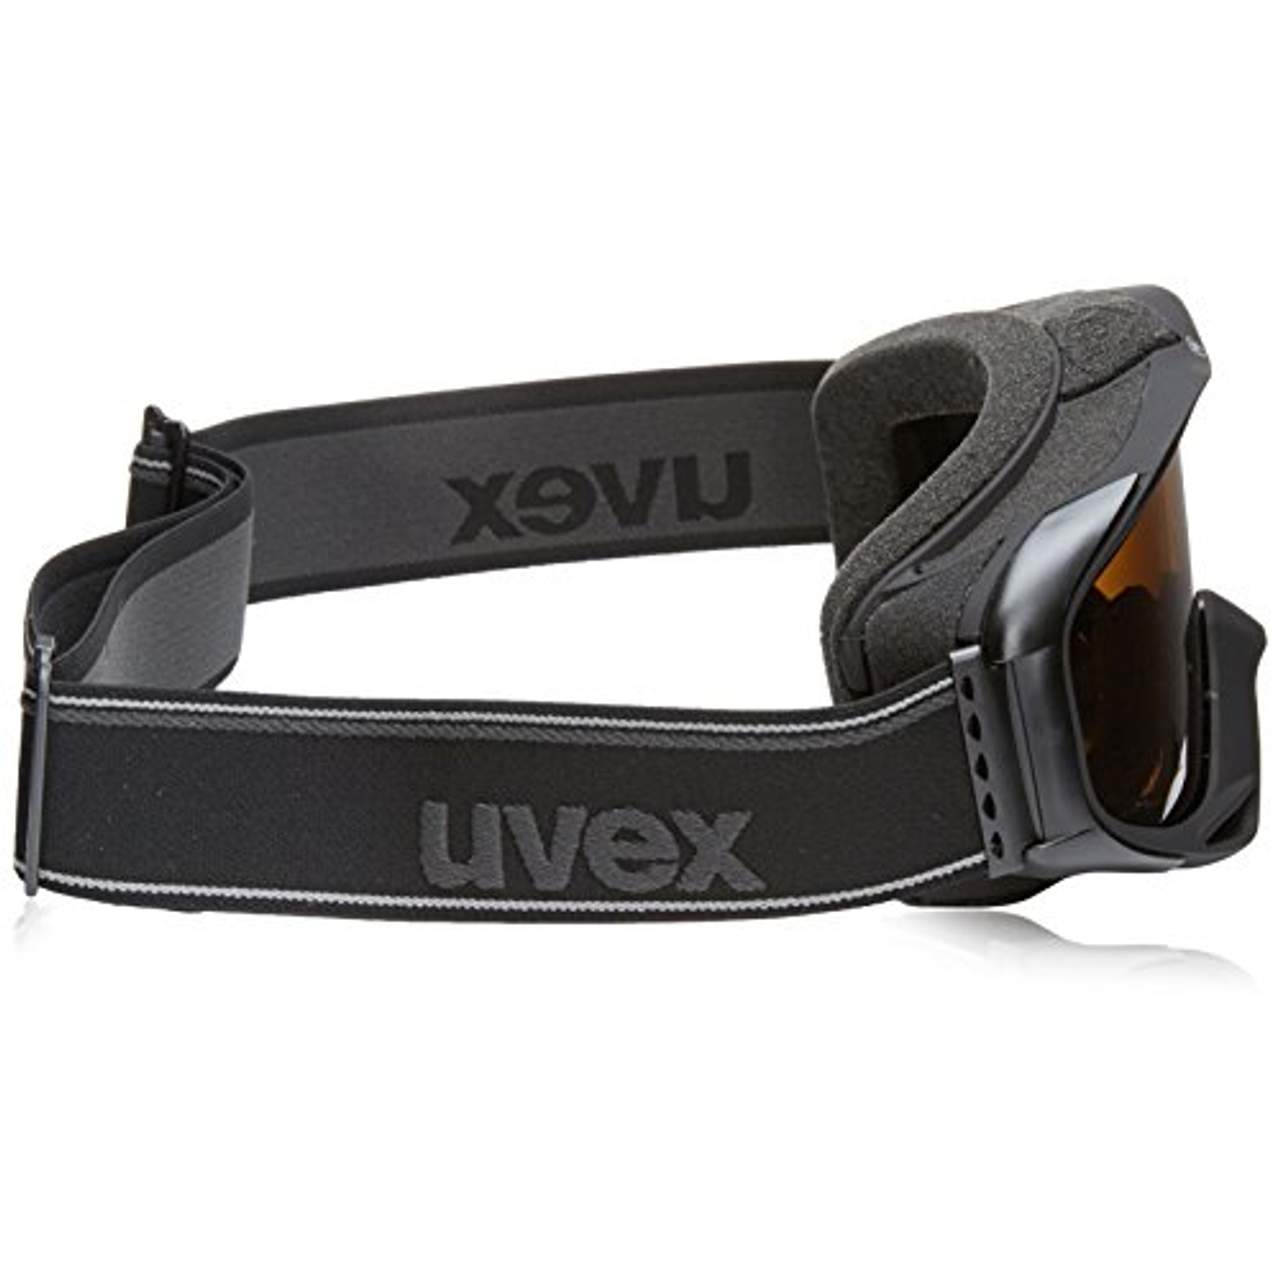 Uvex g.gl 300 pola Skibrille